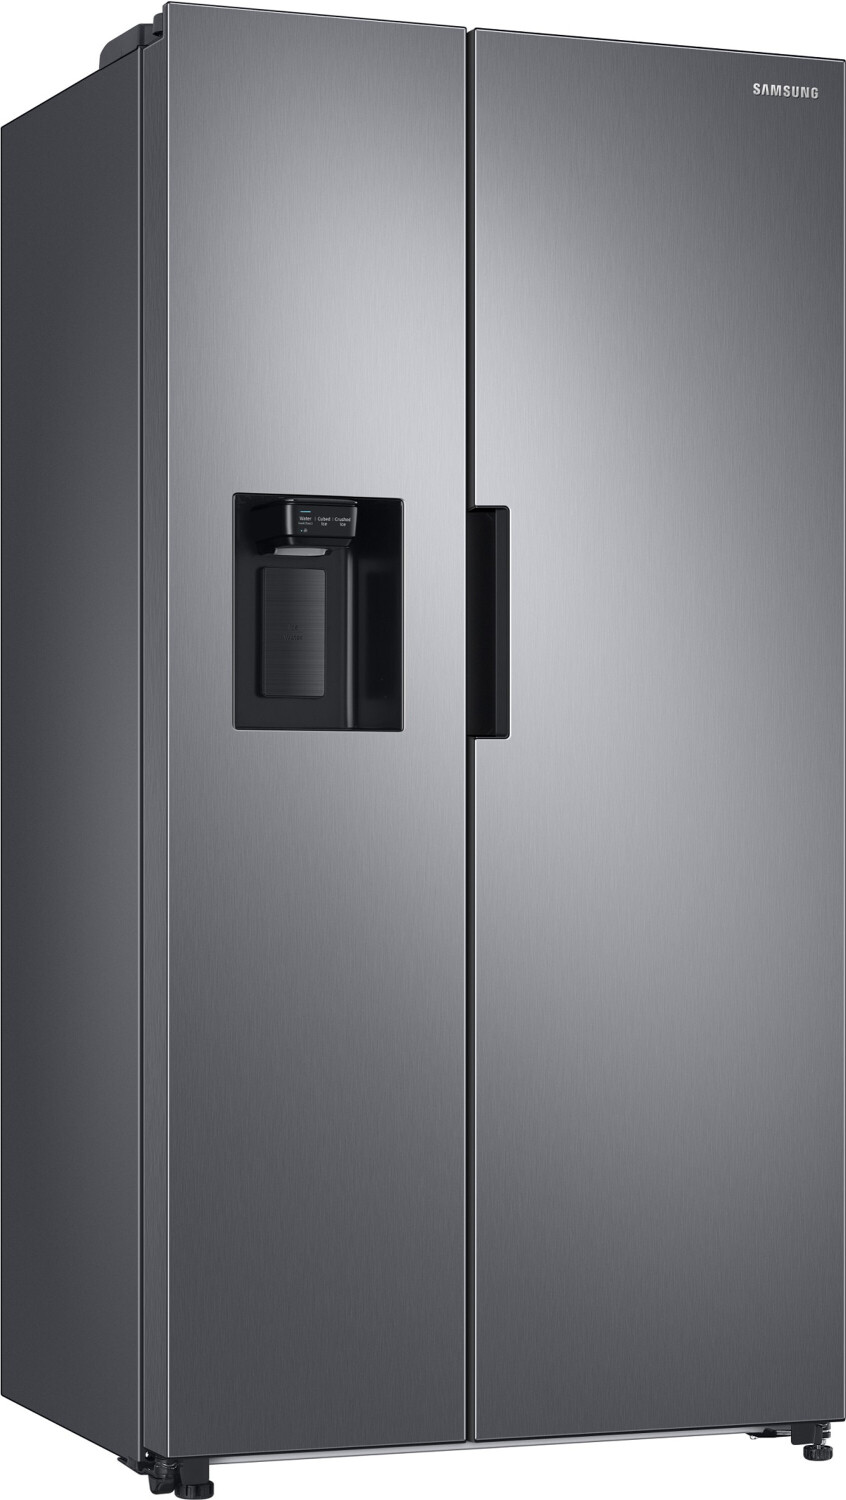 Bild zu Side-by-Side Kühlschrank Samsung RS6JA8811S9/EG RS8000 für 844,40€ (Vergleich: 999,99€)